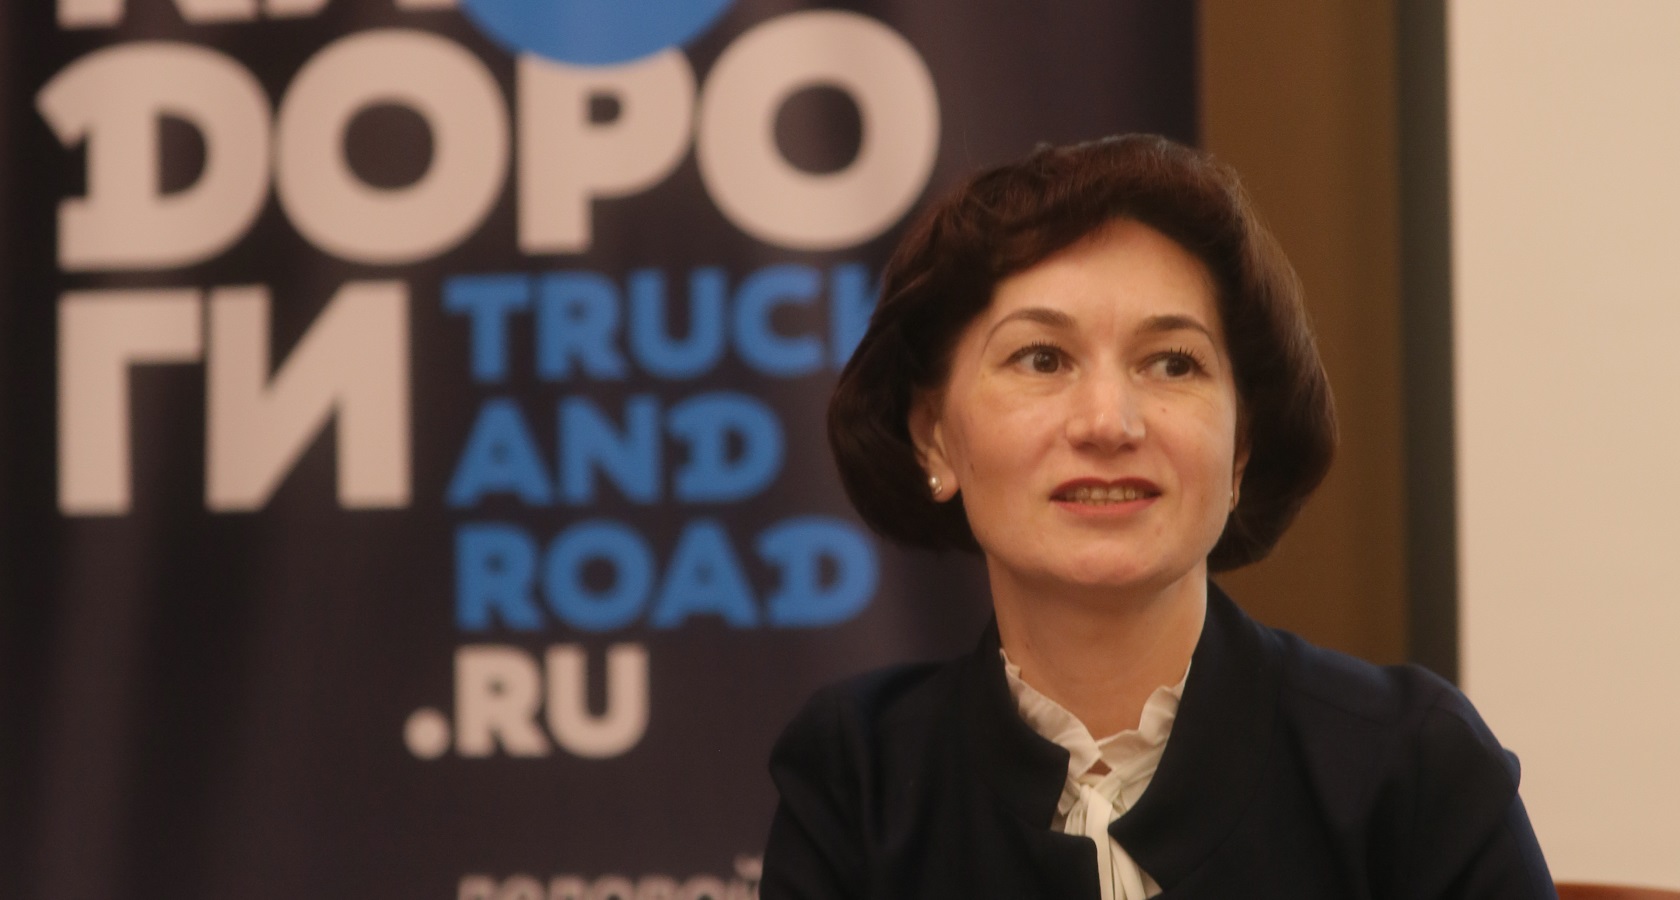 Глава департамента GEFCO Russia Ирина Новикова приветствует новые жесткие шаги со стороны правительства (фото: ATO Events)